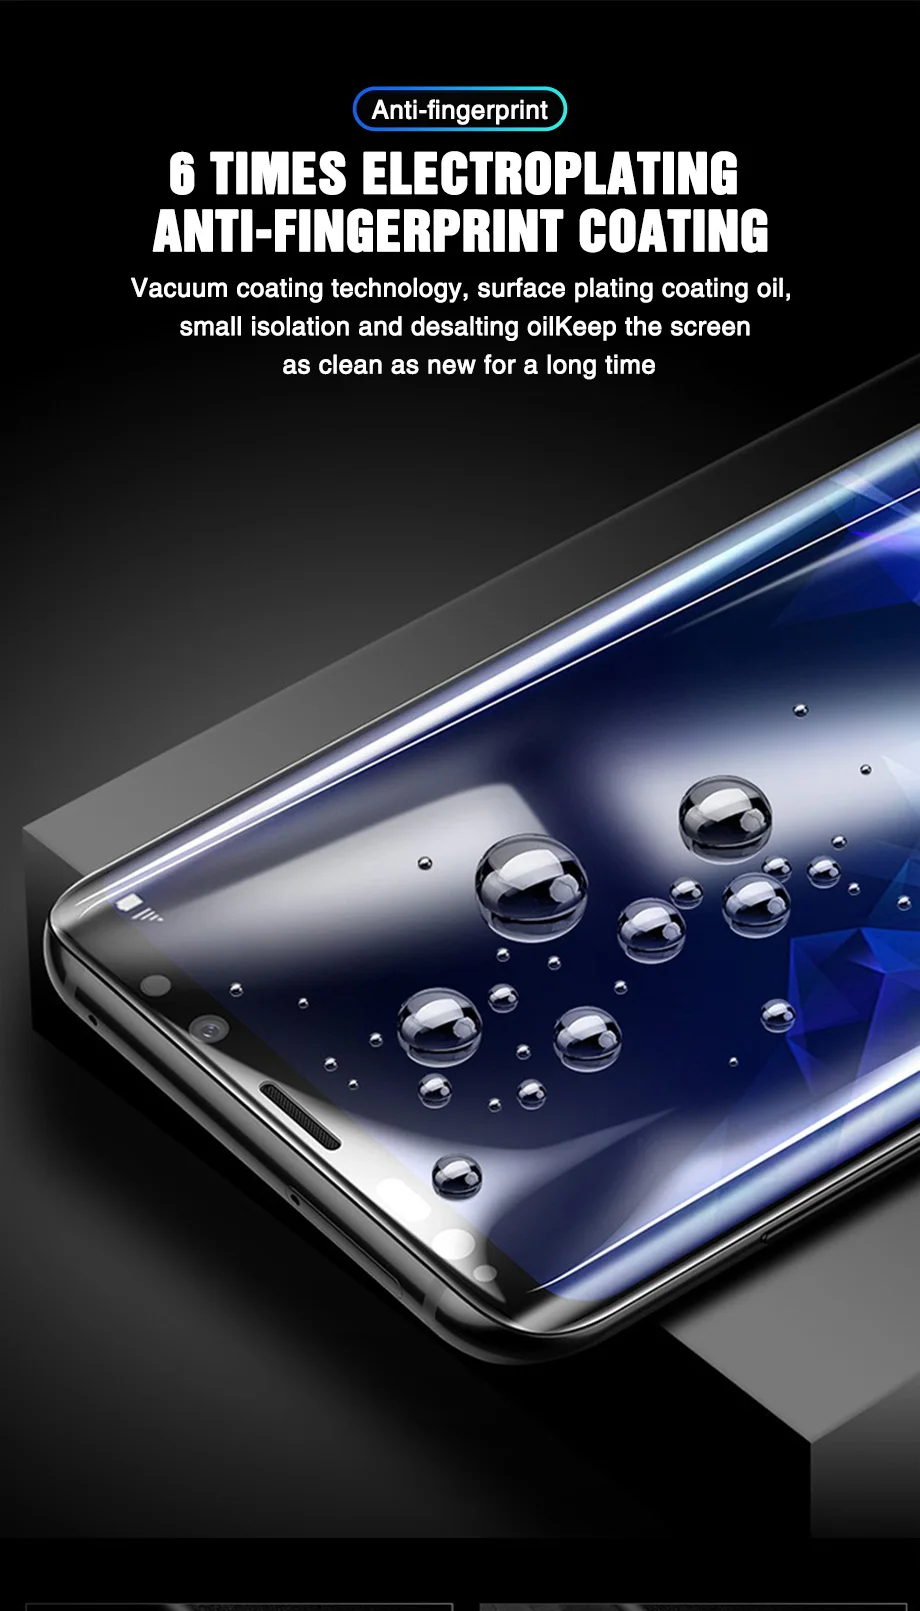 10 шт полное изогнутое Защитное стекло для samsung Galaxy S8 S9 S6 S7 edge Plus защитная пленка из закаленного стекла для Note 8 9